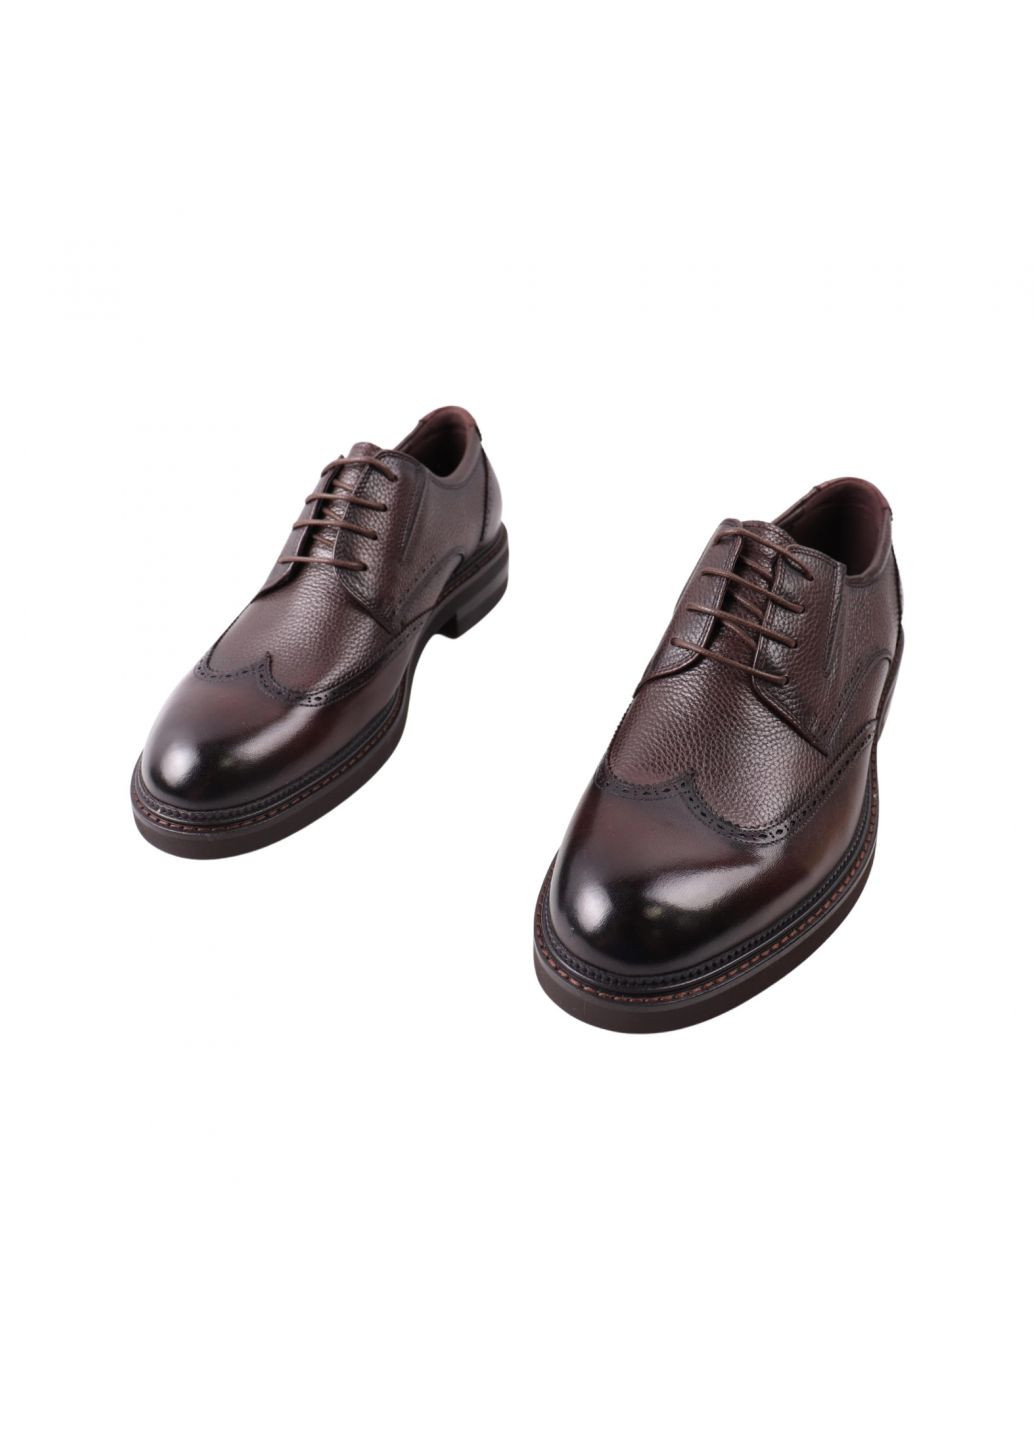 Туфлі чоловічі Lido Marinozi коричневі натуральна шкіра Lido Marinozzi 308-23dt (261856731)